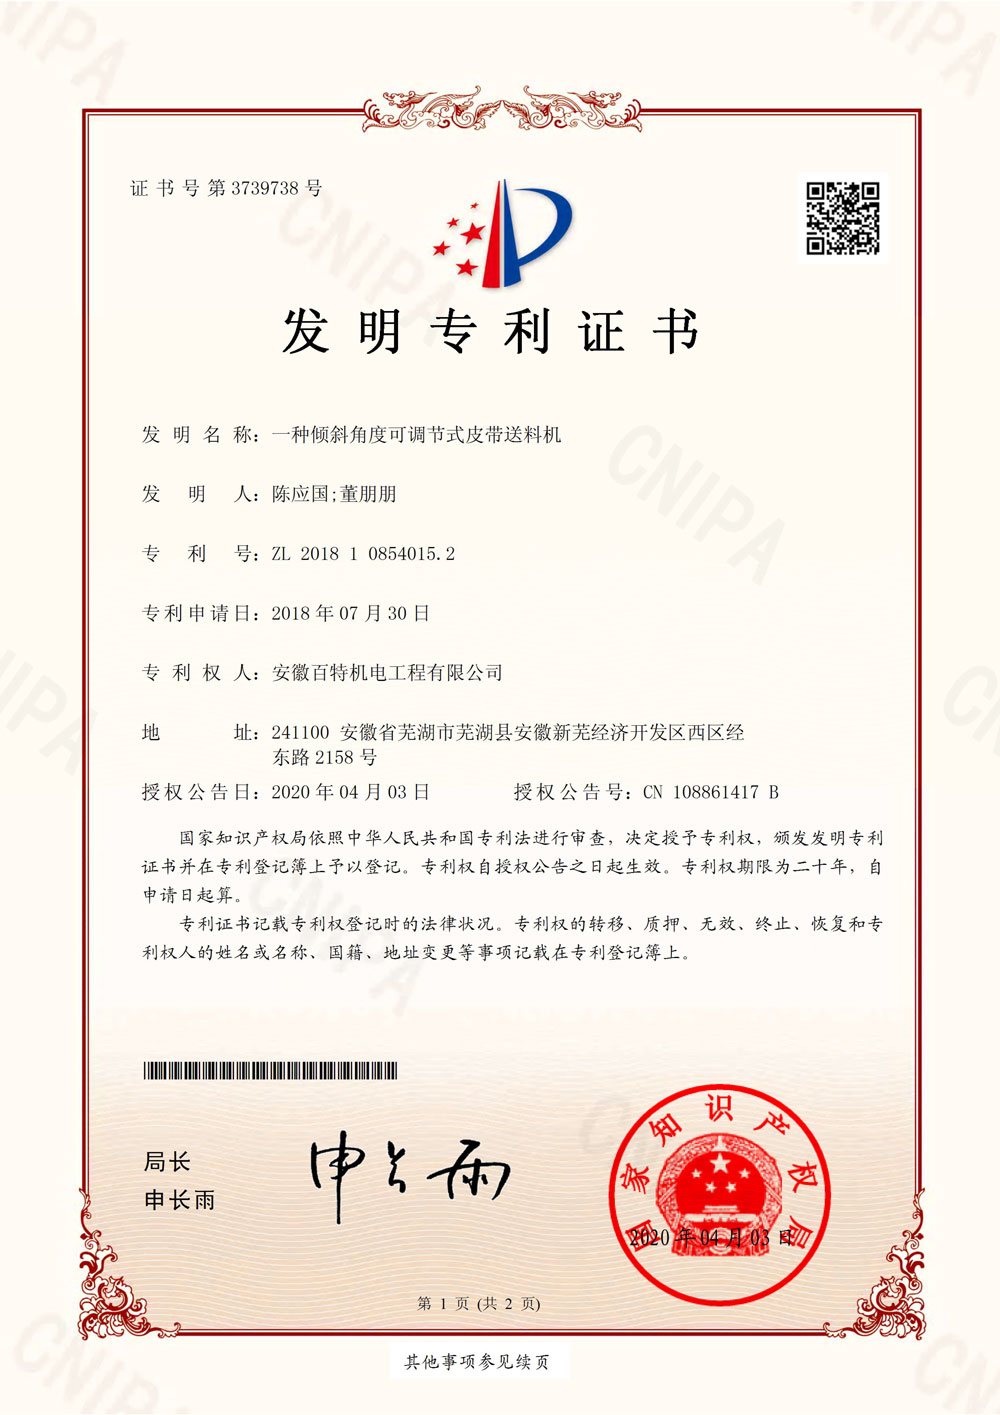 衢州百特第7件发明专利证书-1